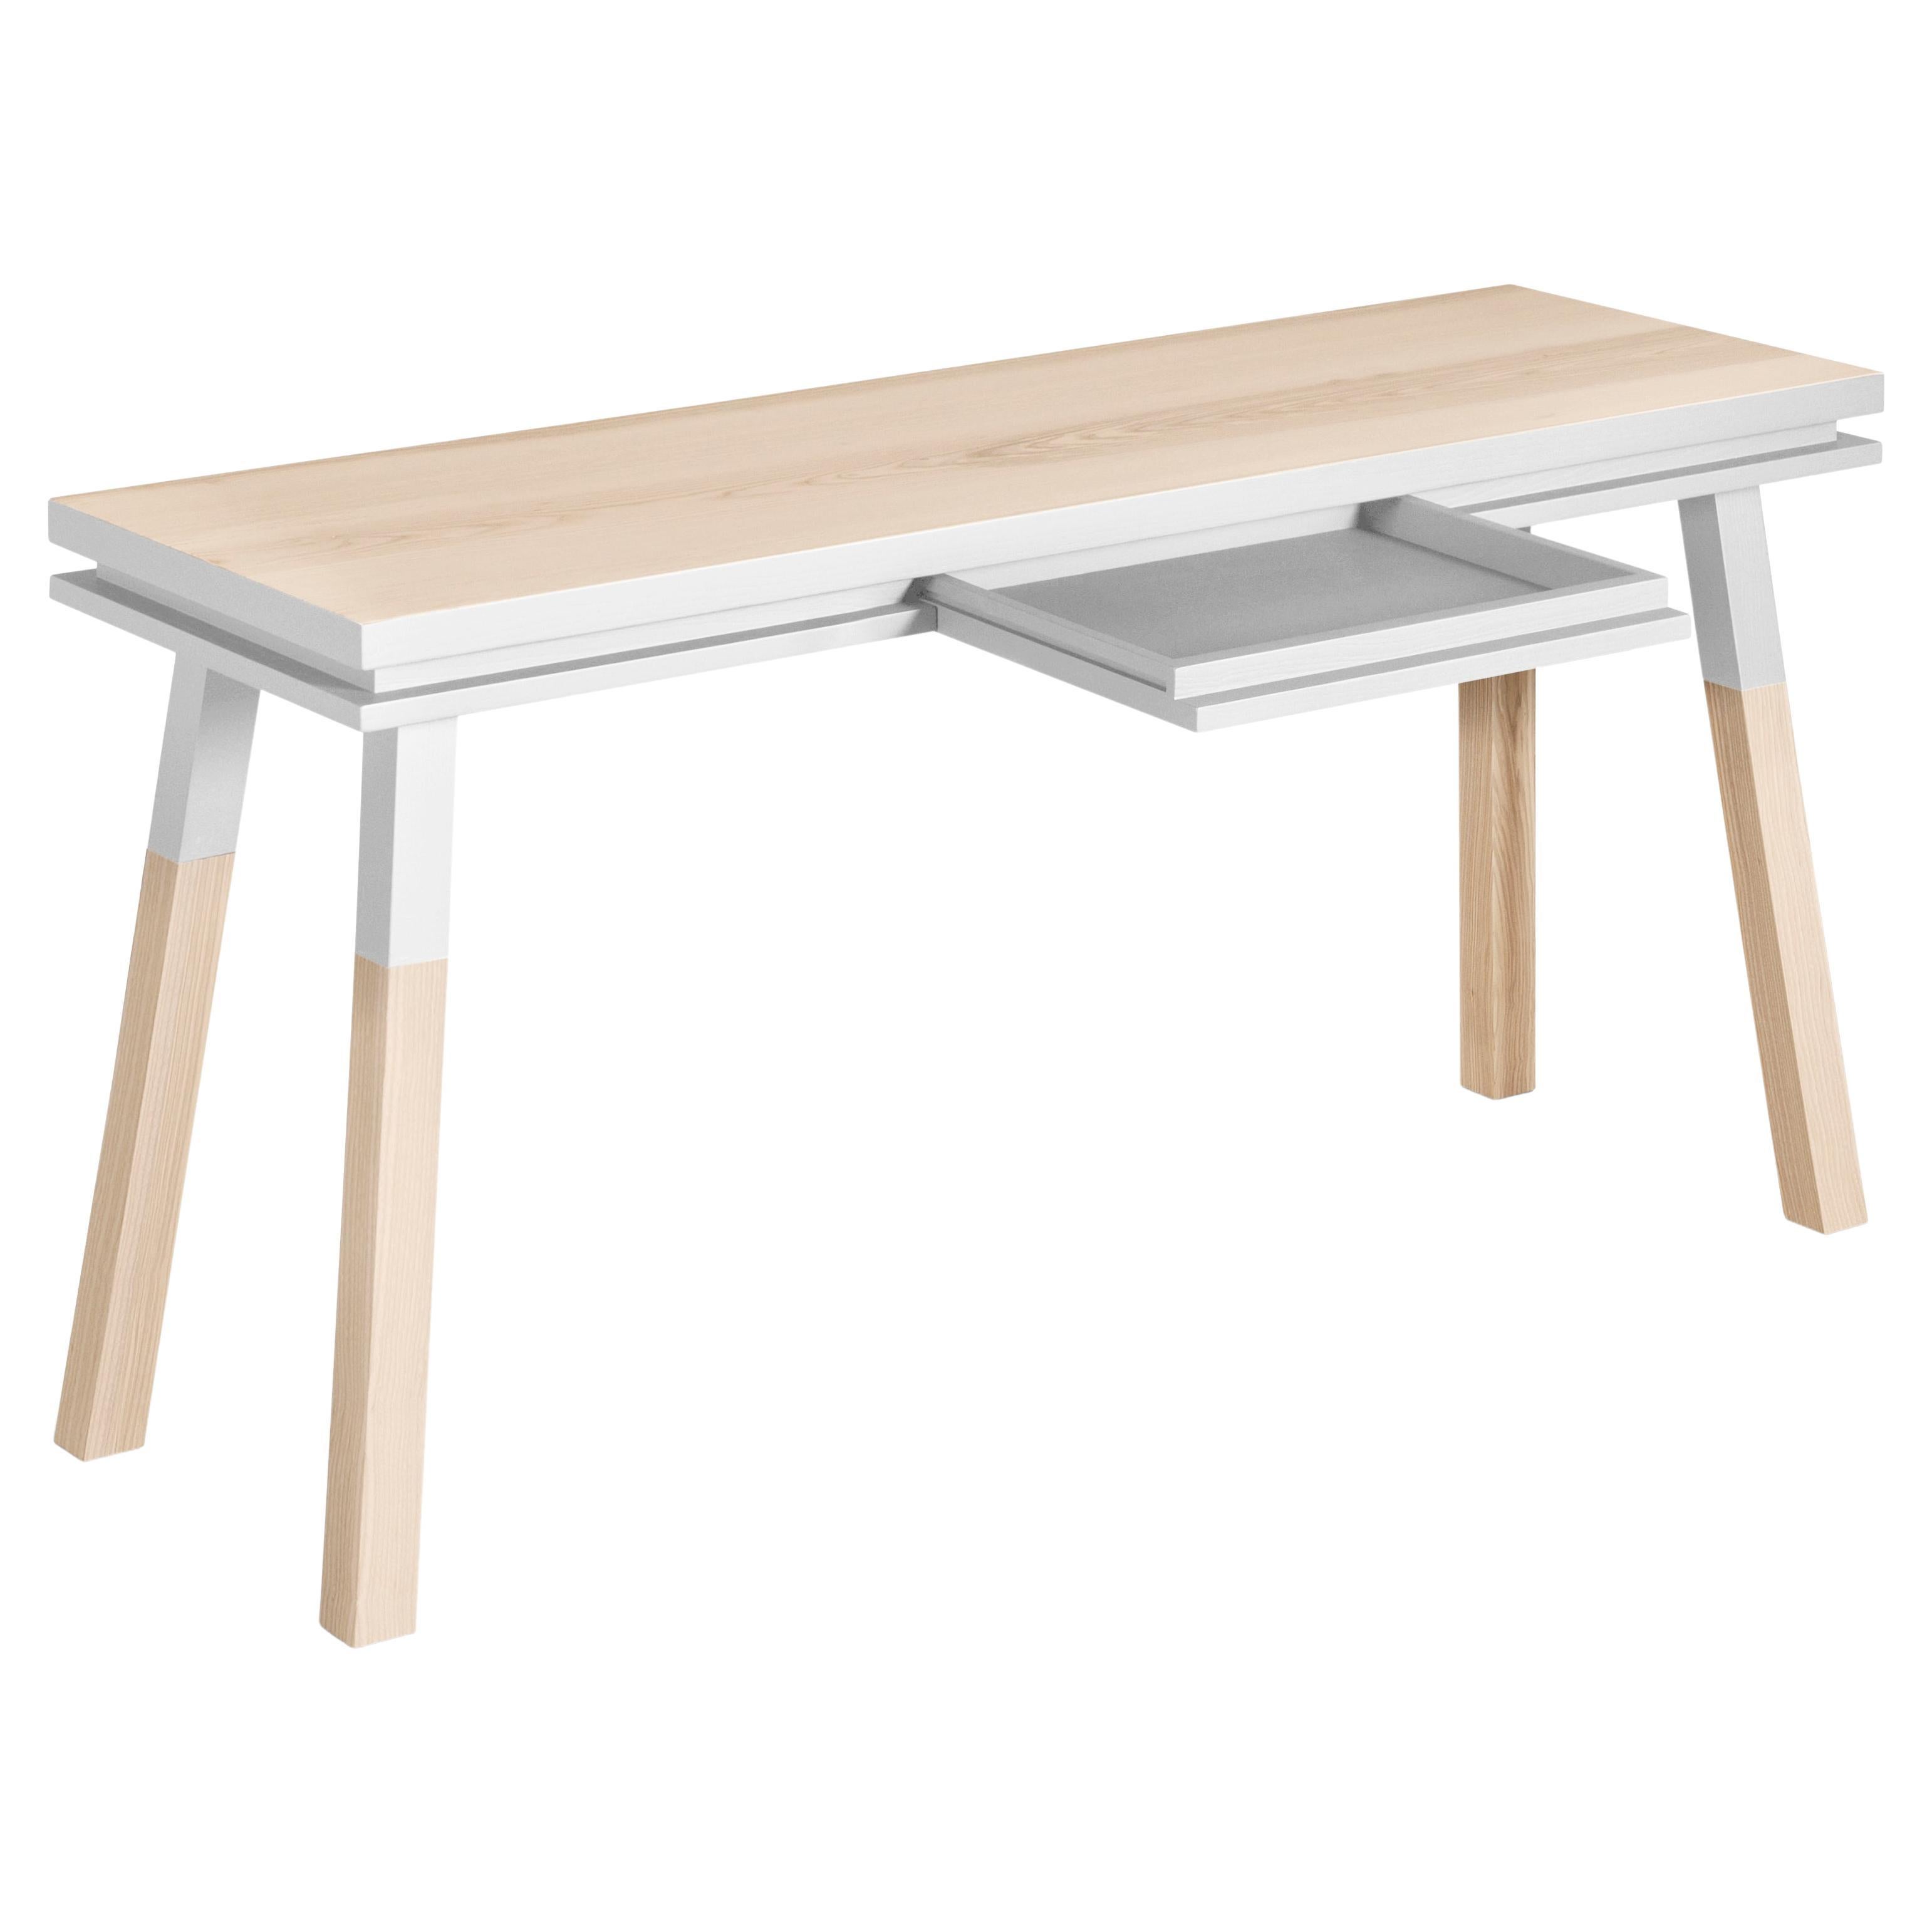 Table à écrire blanche en bois massif, am designs par Eric Gizard, Paris - French craft  en vente